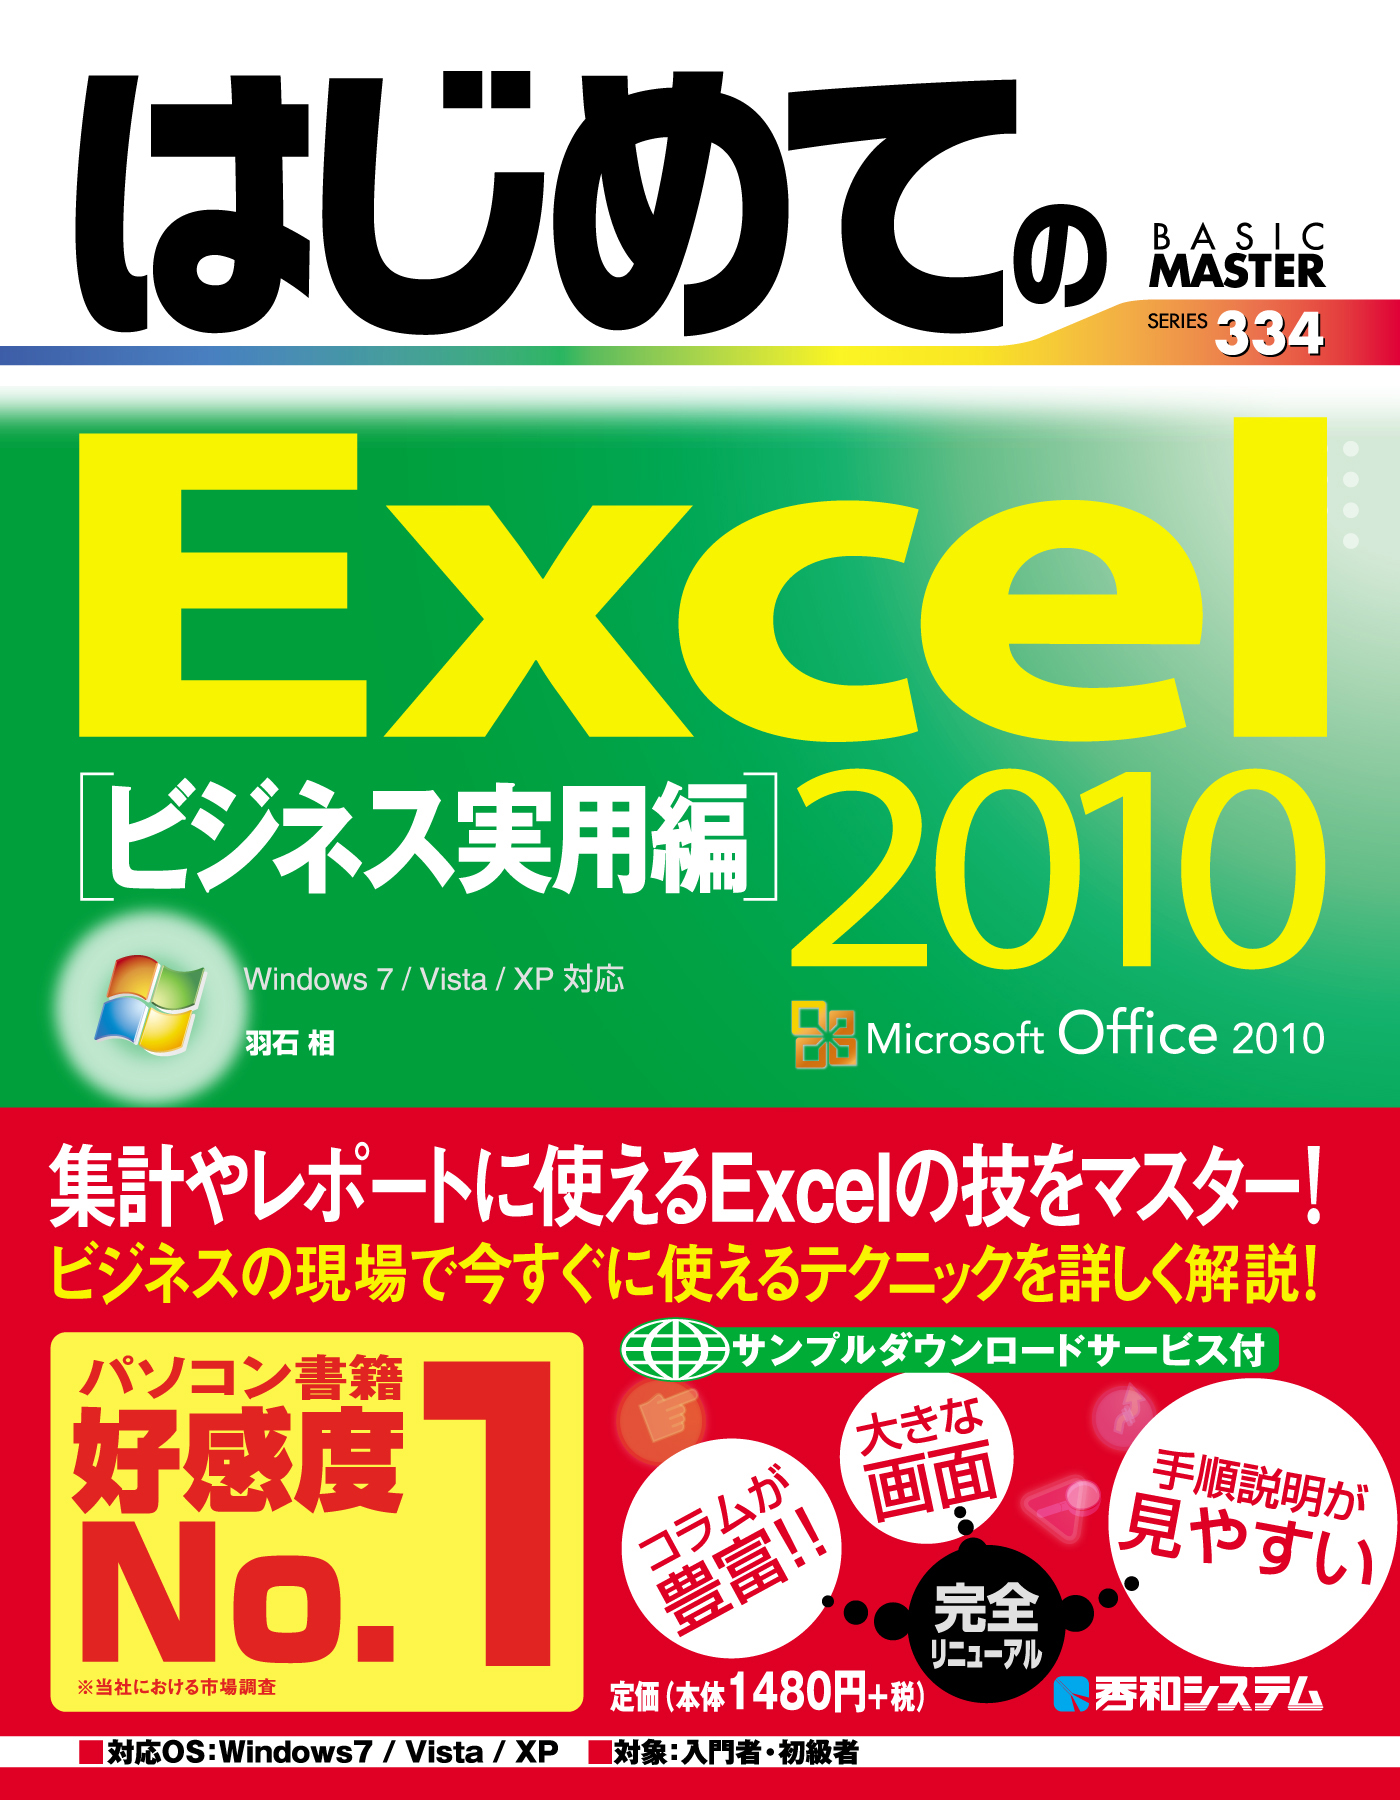 はじめてのExcel 2010 ビジネス実用編 - 羽石相 - ビジネス・実用書 ...